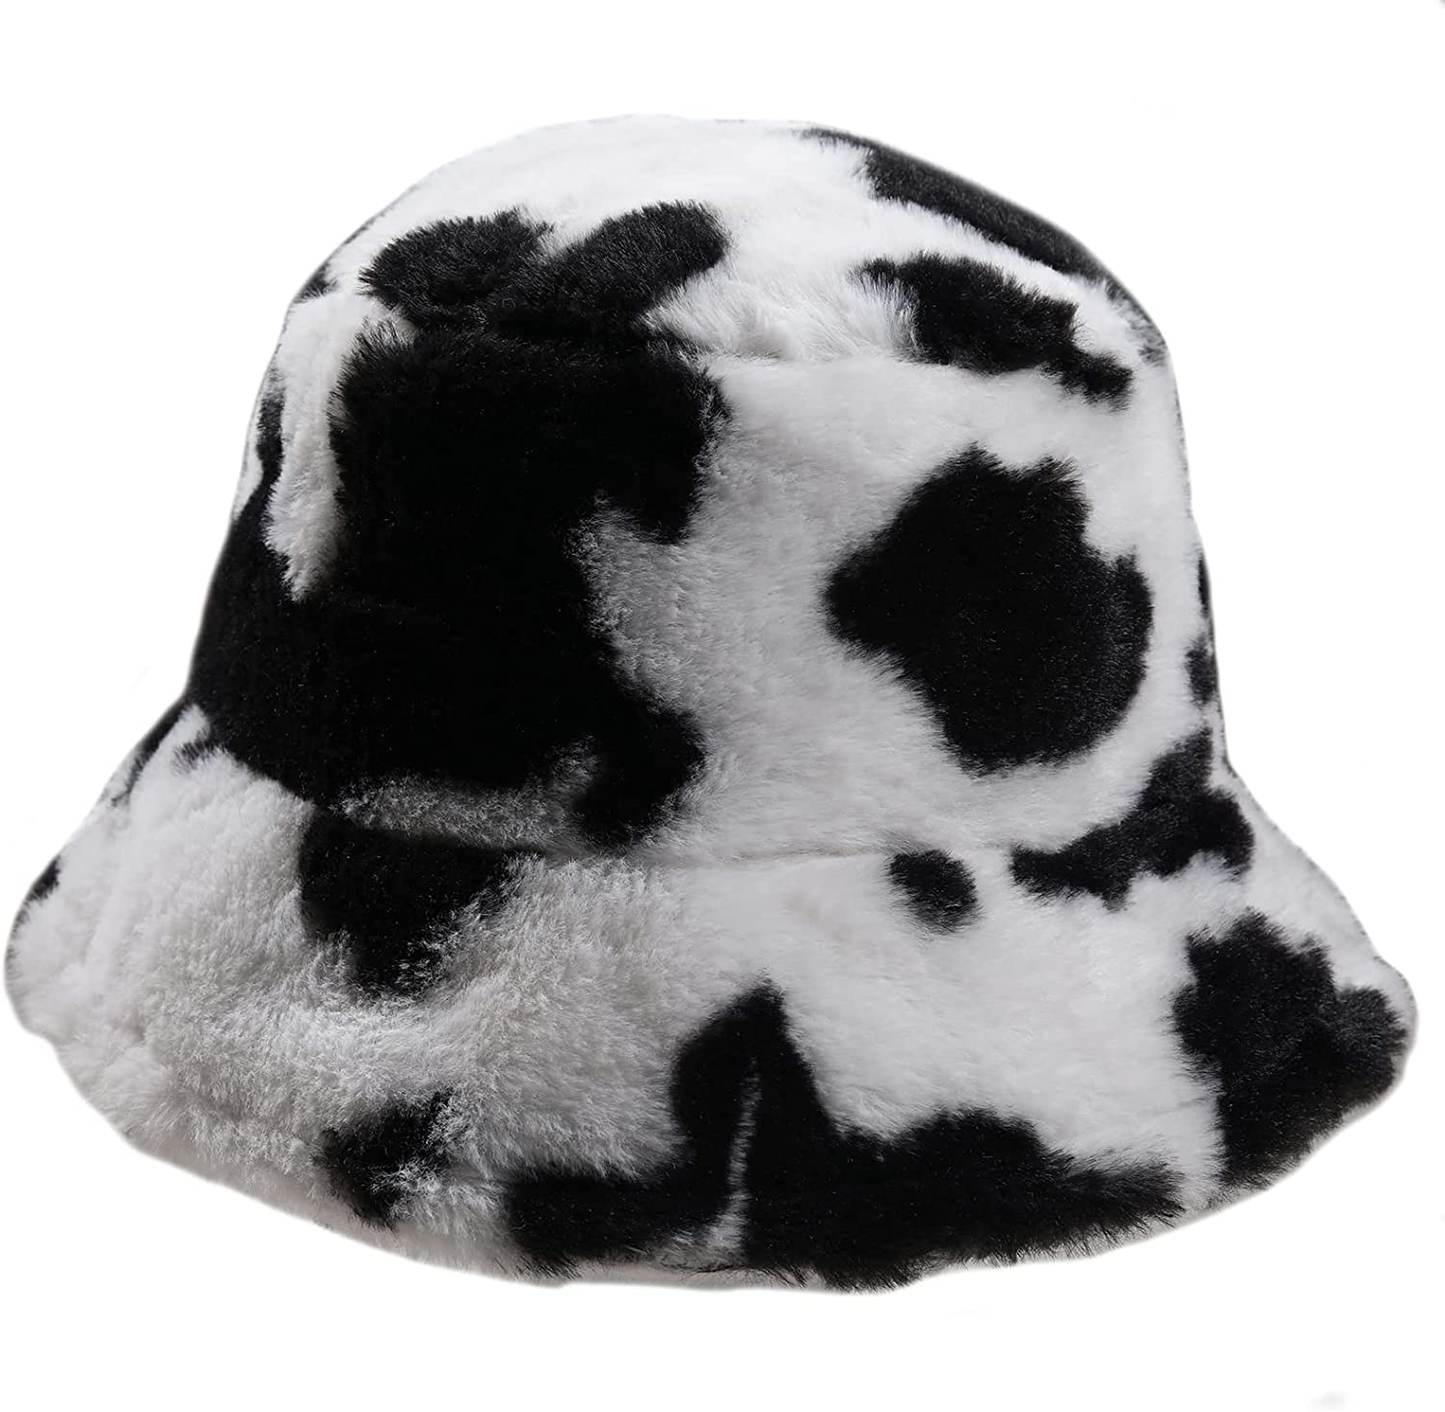 Cute Bucket Hat Beach Fisherman Hats for Women, Reversible Double-Side-Wear